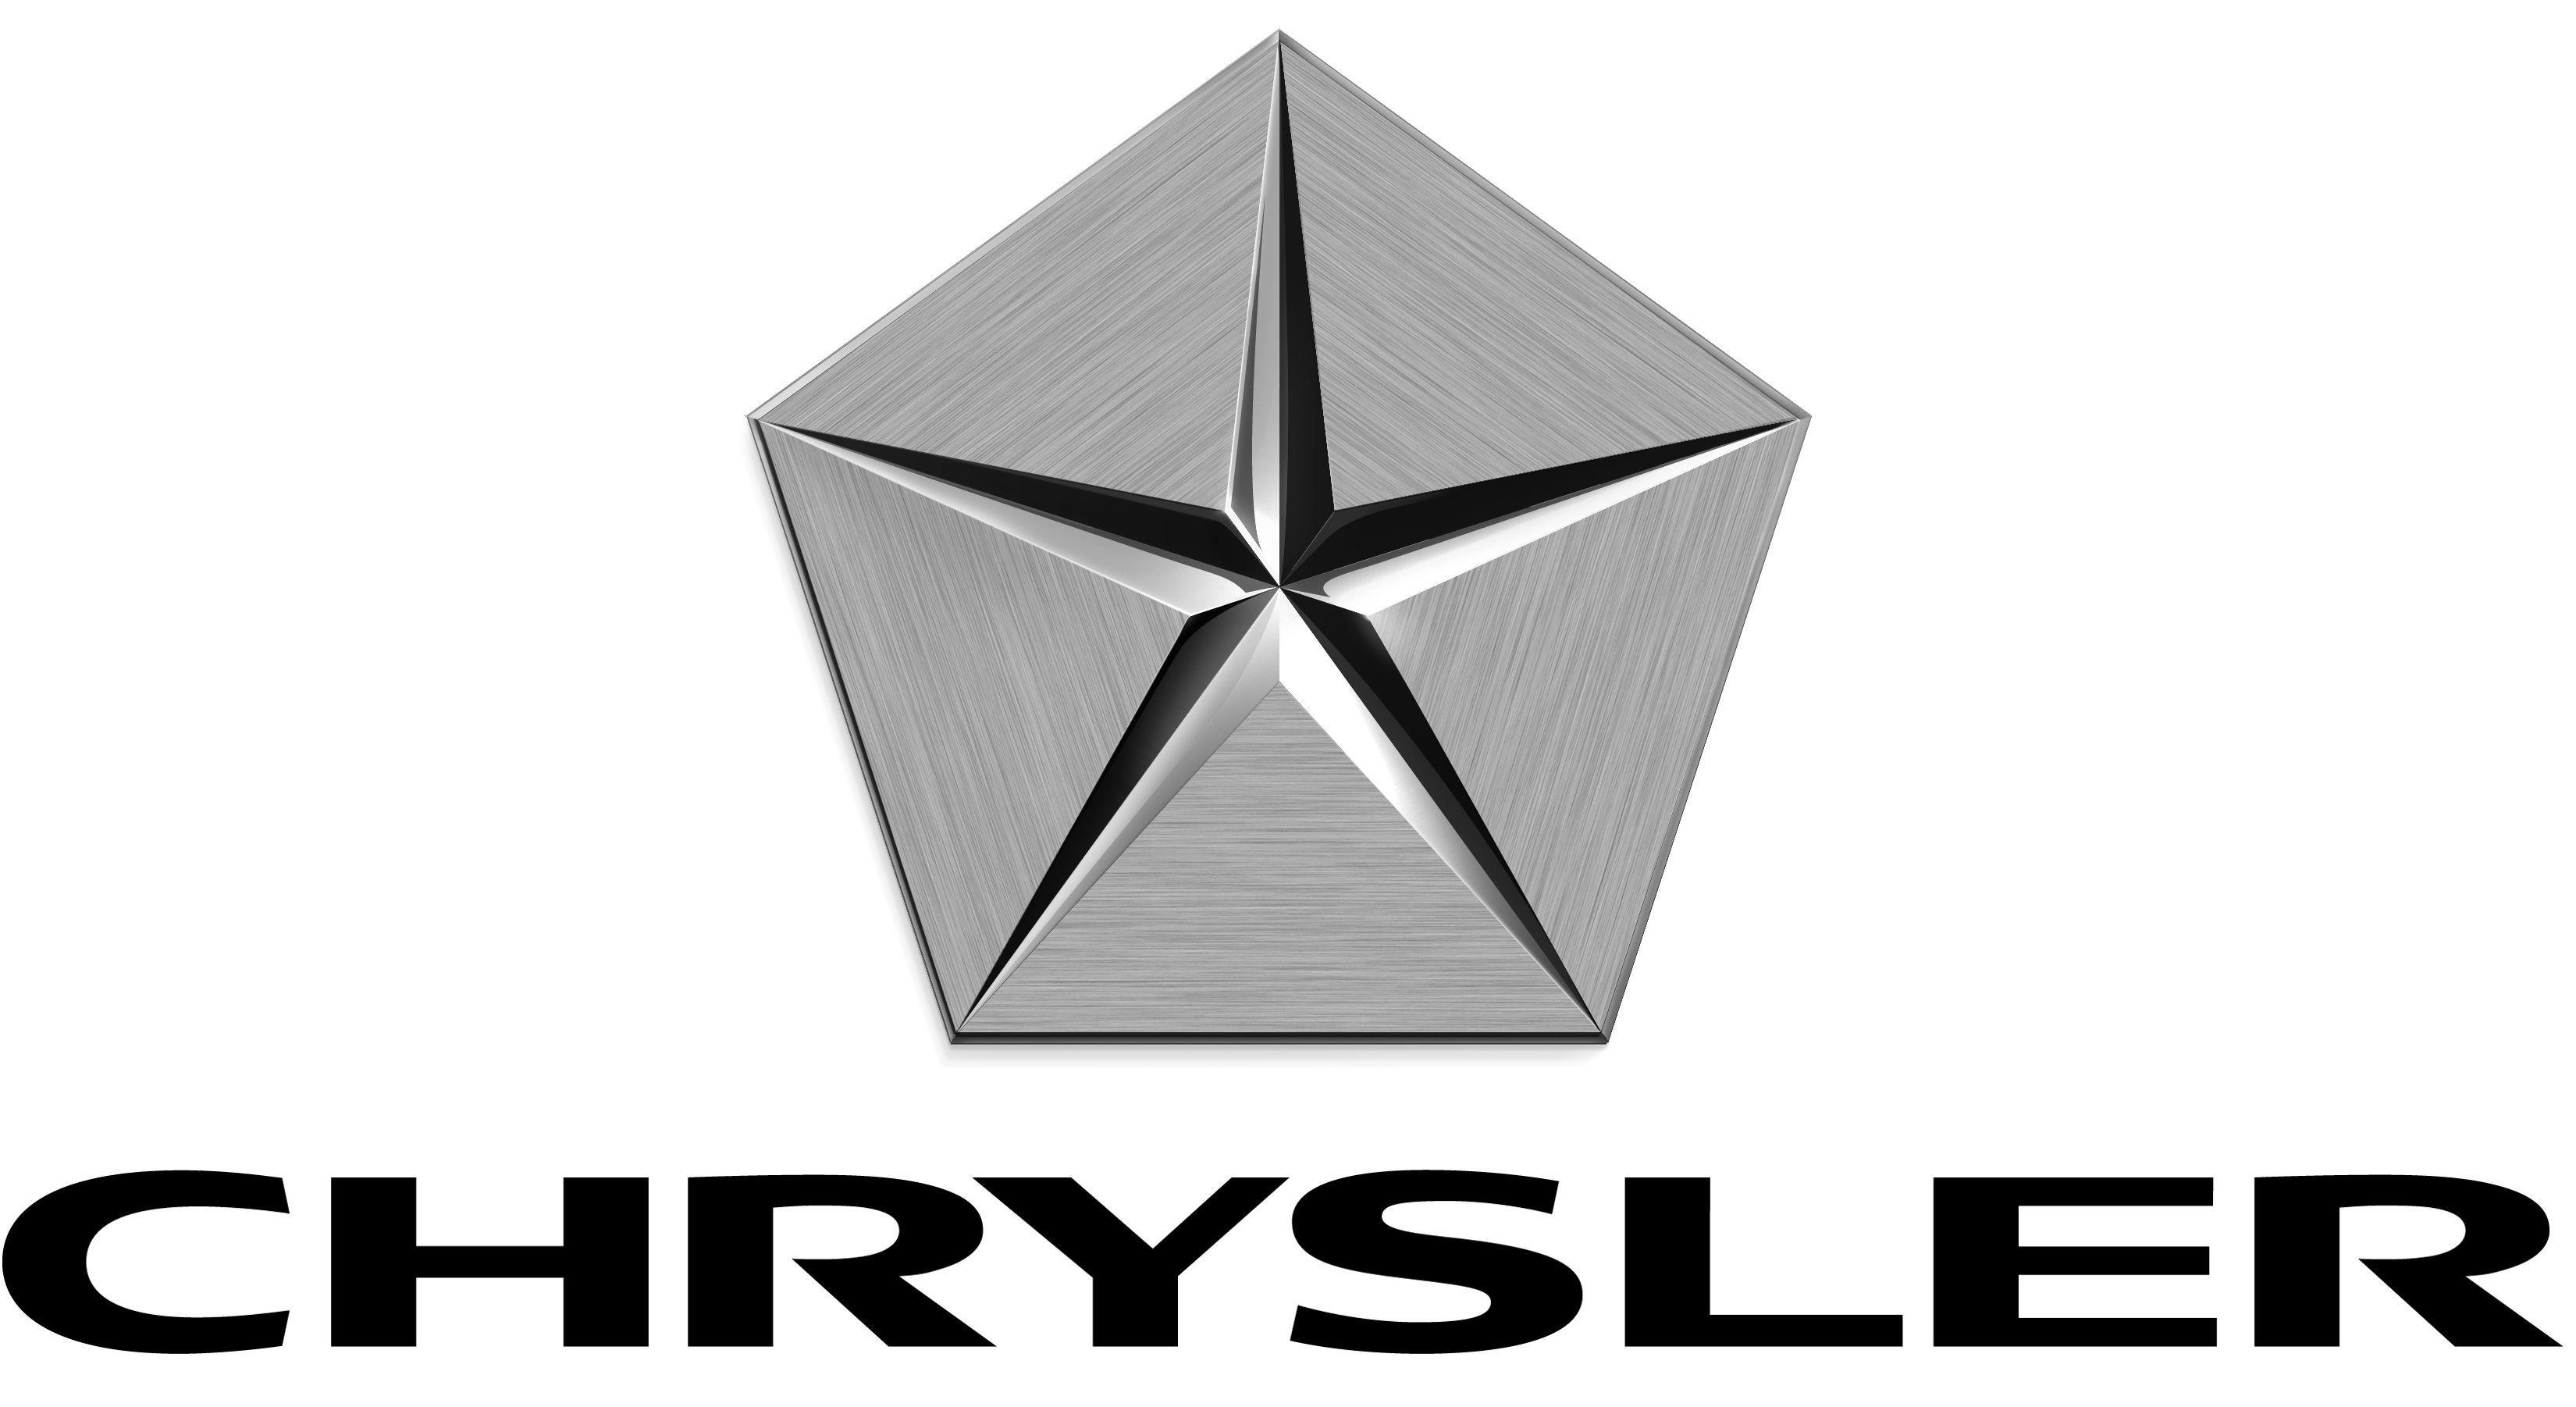 Chrysler Pentastar Logo - The Chrysler Pentastar logo that appeared on Chrysler products ...